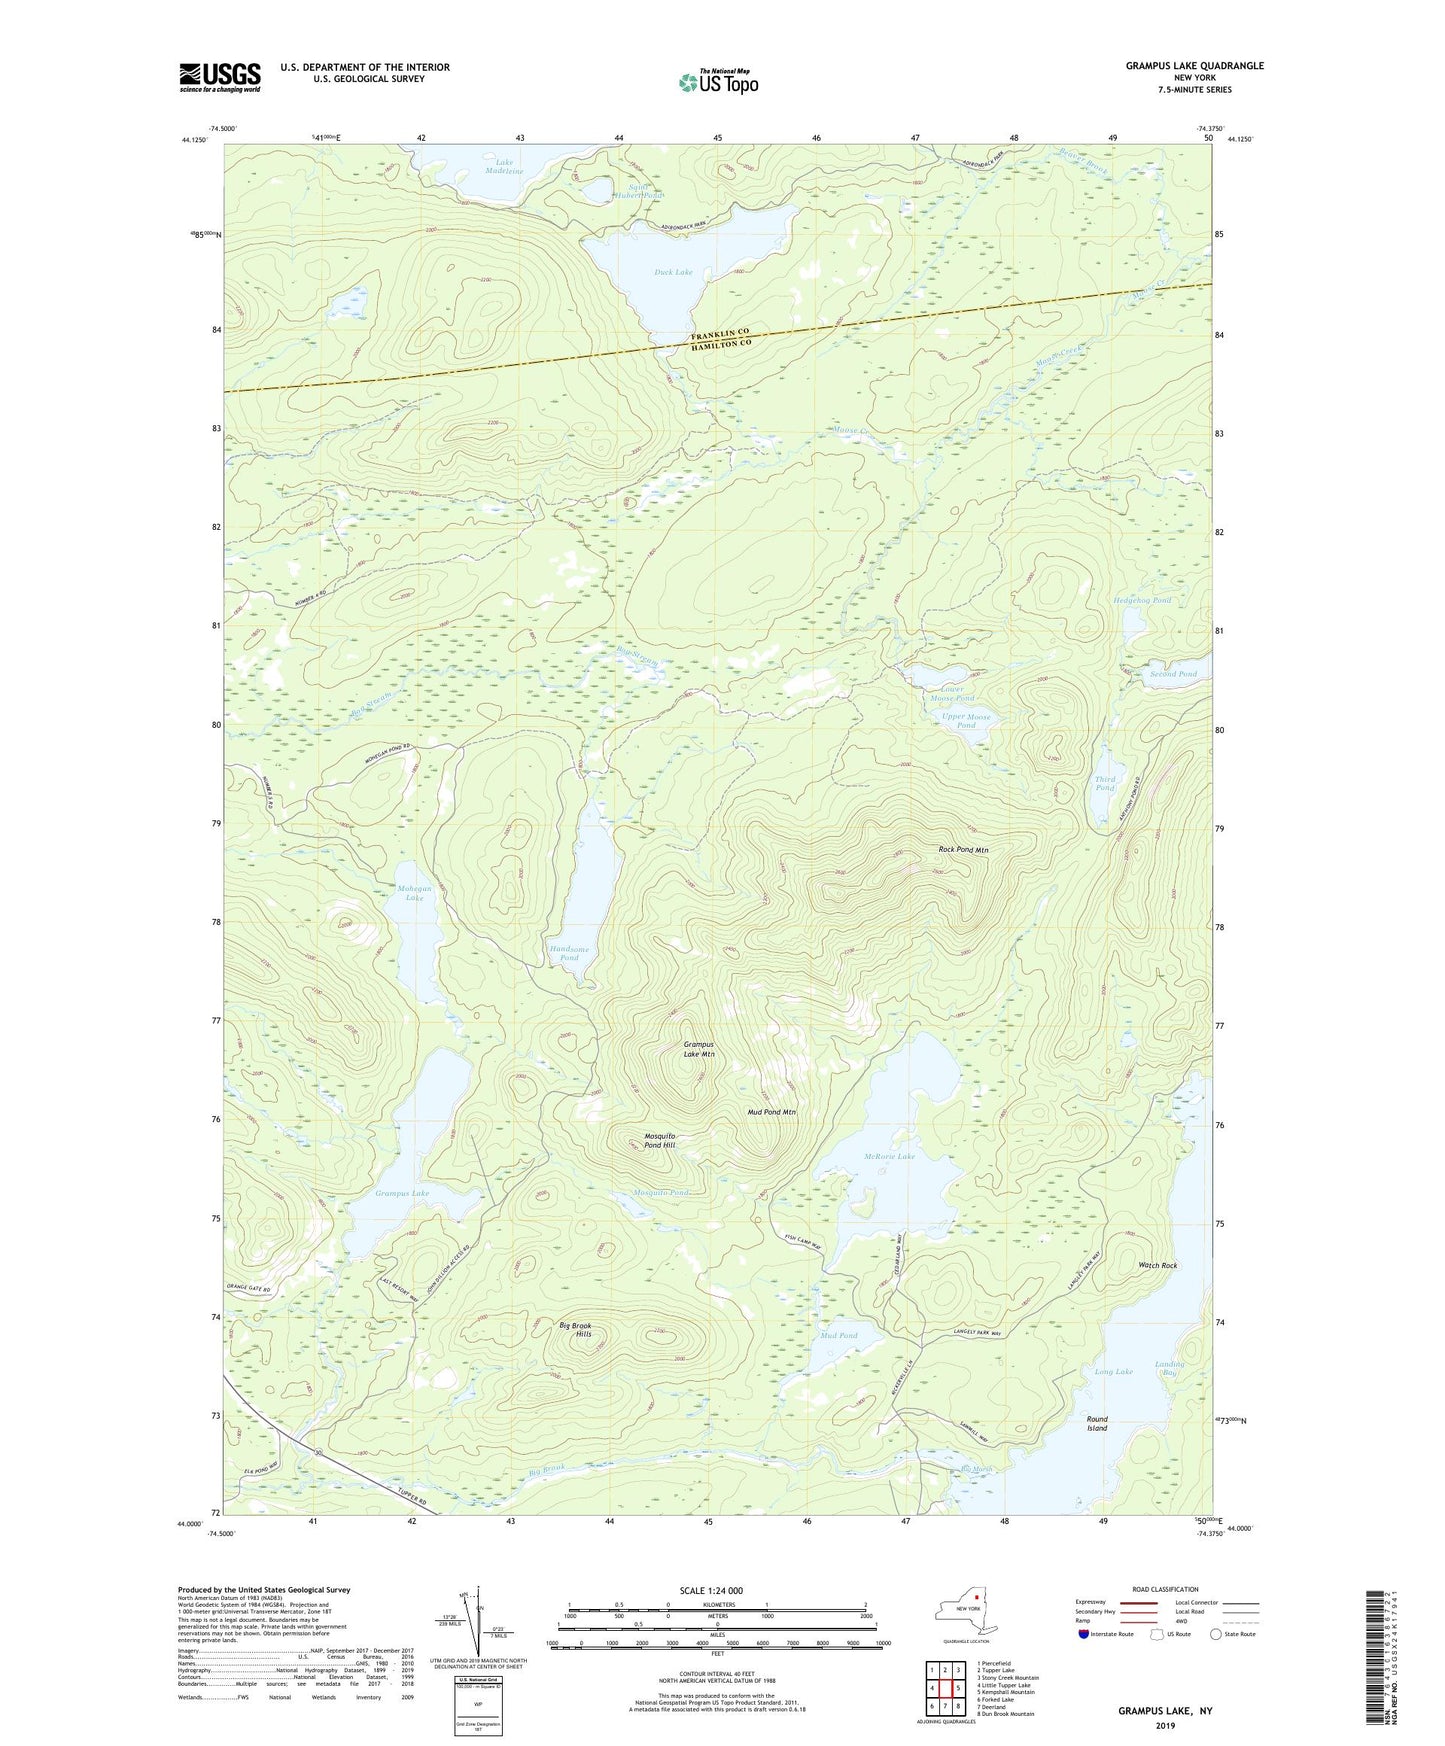 Grampus Lake New York US Topo Map Image